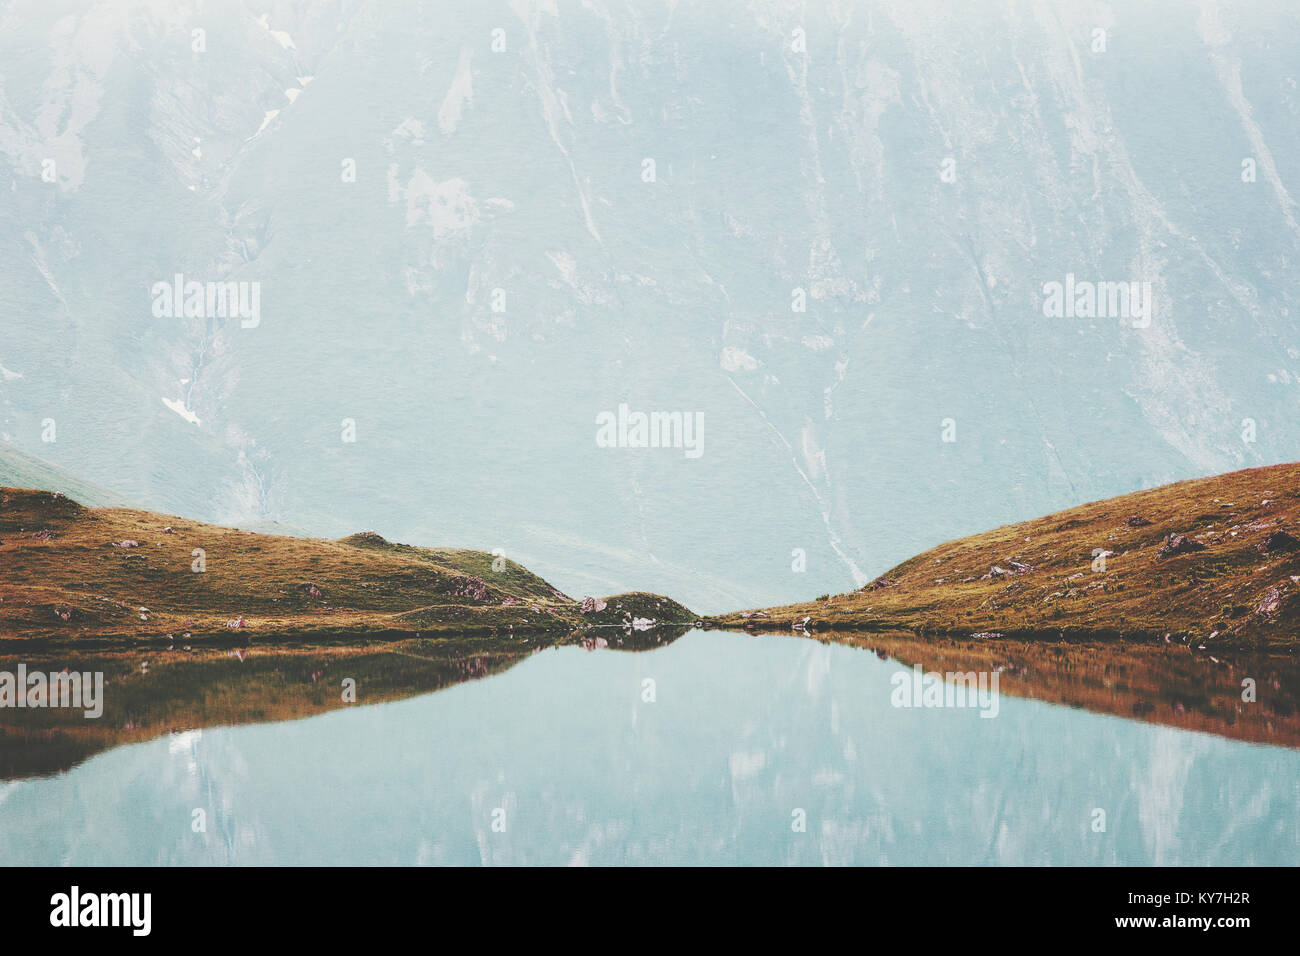 Il lago e le montagne di riflessione a specchio di acqua paesaggio minimo viaggio estivo calma serena vista aerea Foto Stock